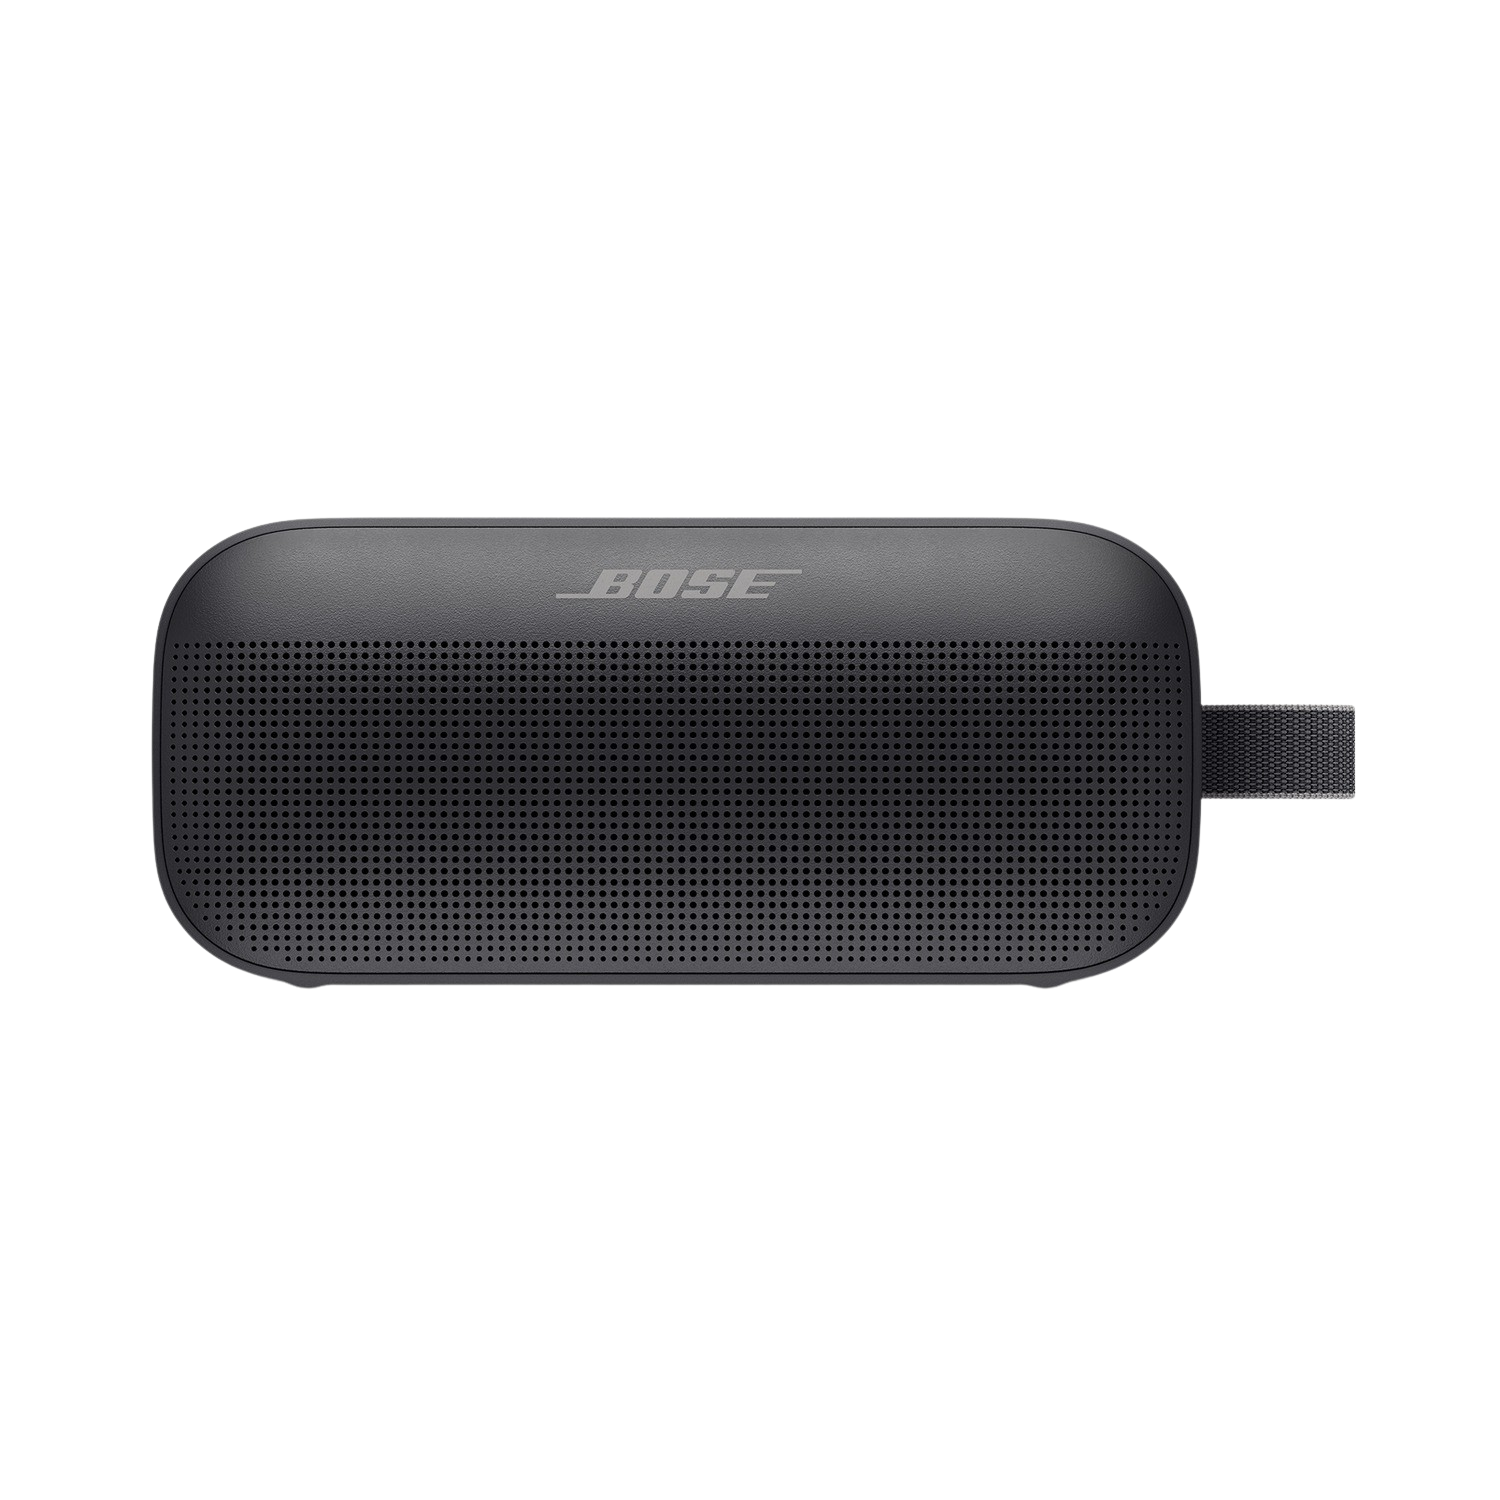 Altavoz Bluetooth Bose soundlink flex sumergible de viaje negro 30 w 4.2 hasta 12